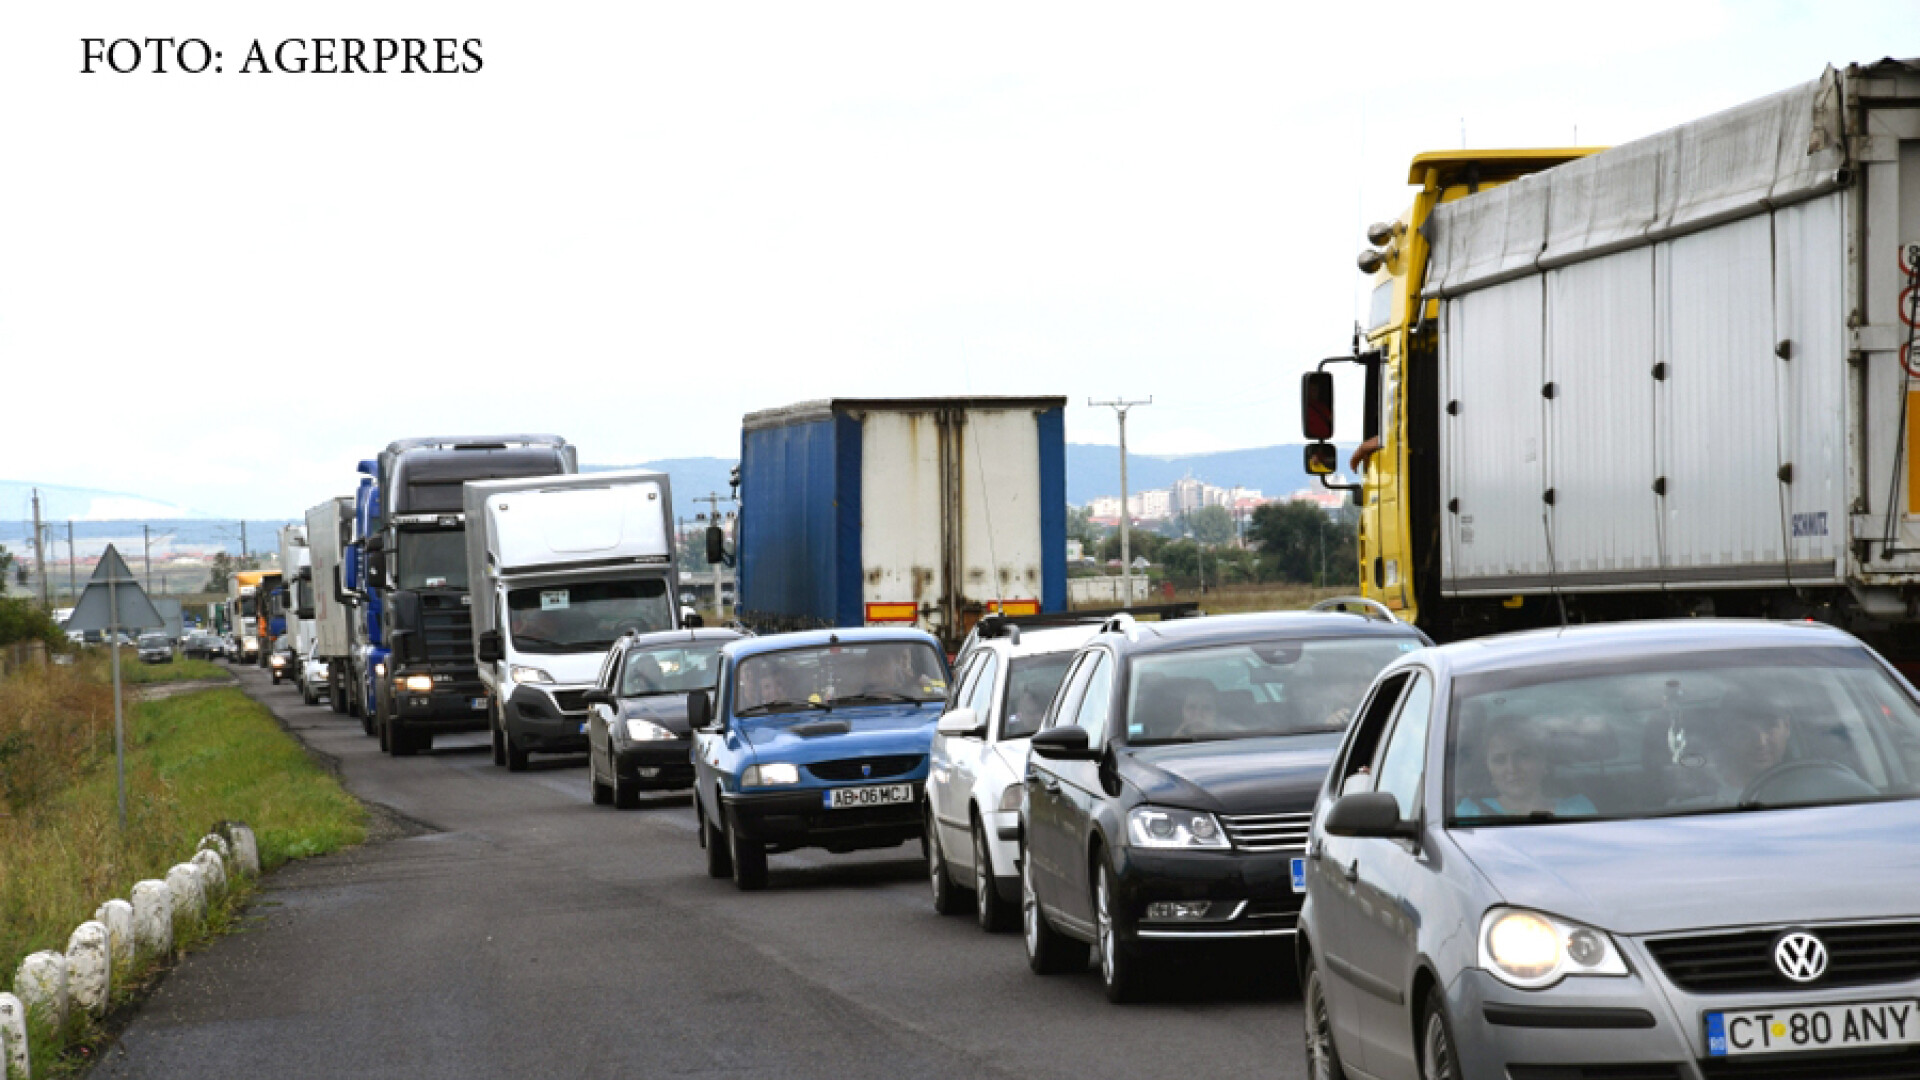 Circulatia rutiera a fost ingreunata pe DN1, intre Alba Iulia si Sebes, pe alocuri traficul fiind chiar blocat, dupa ce zeci de transportatori au strabatut traseul respectiv, pe ambele sensuri, cu o viteza foarte mica, pentru a atrage atentia asupra crest